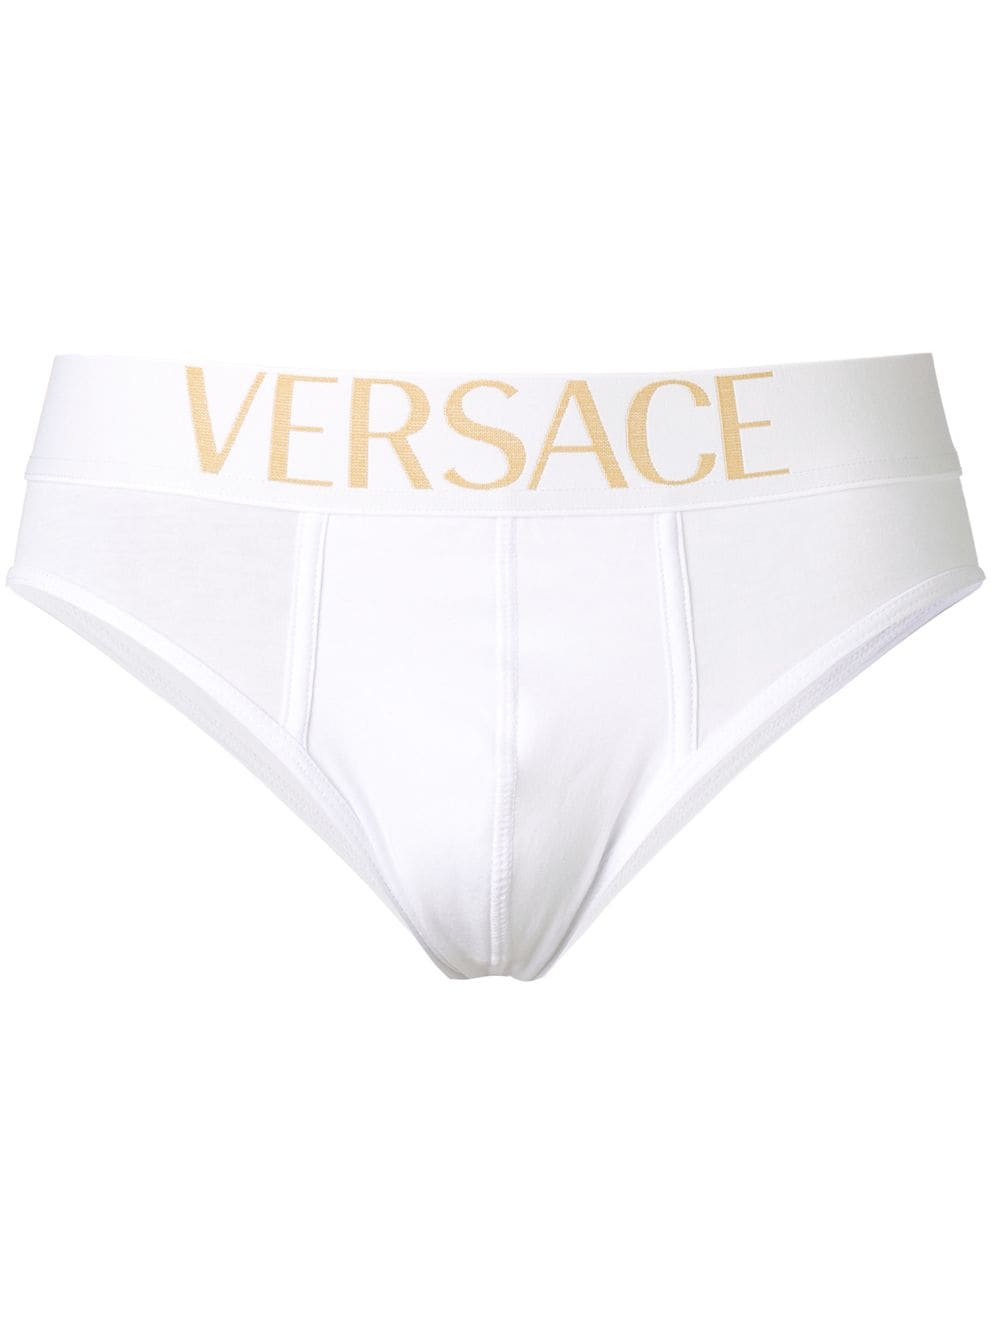 фото Versace трусы с логотипом